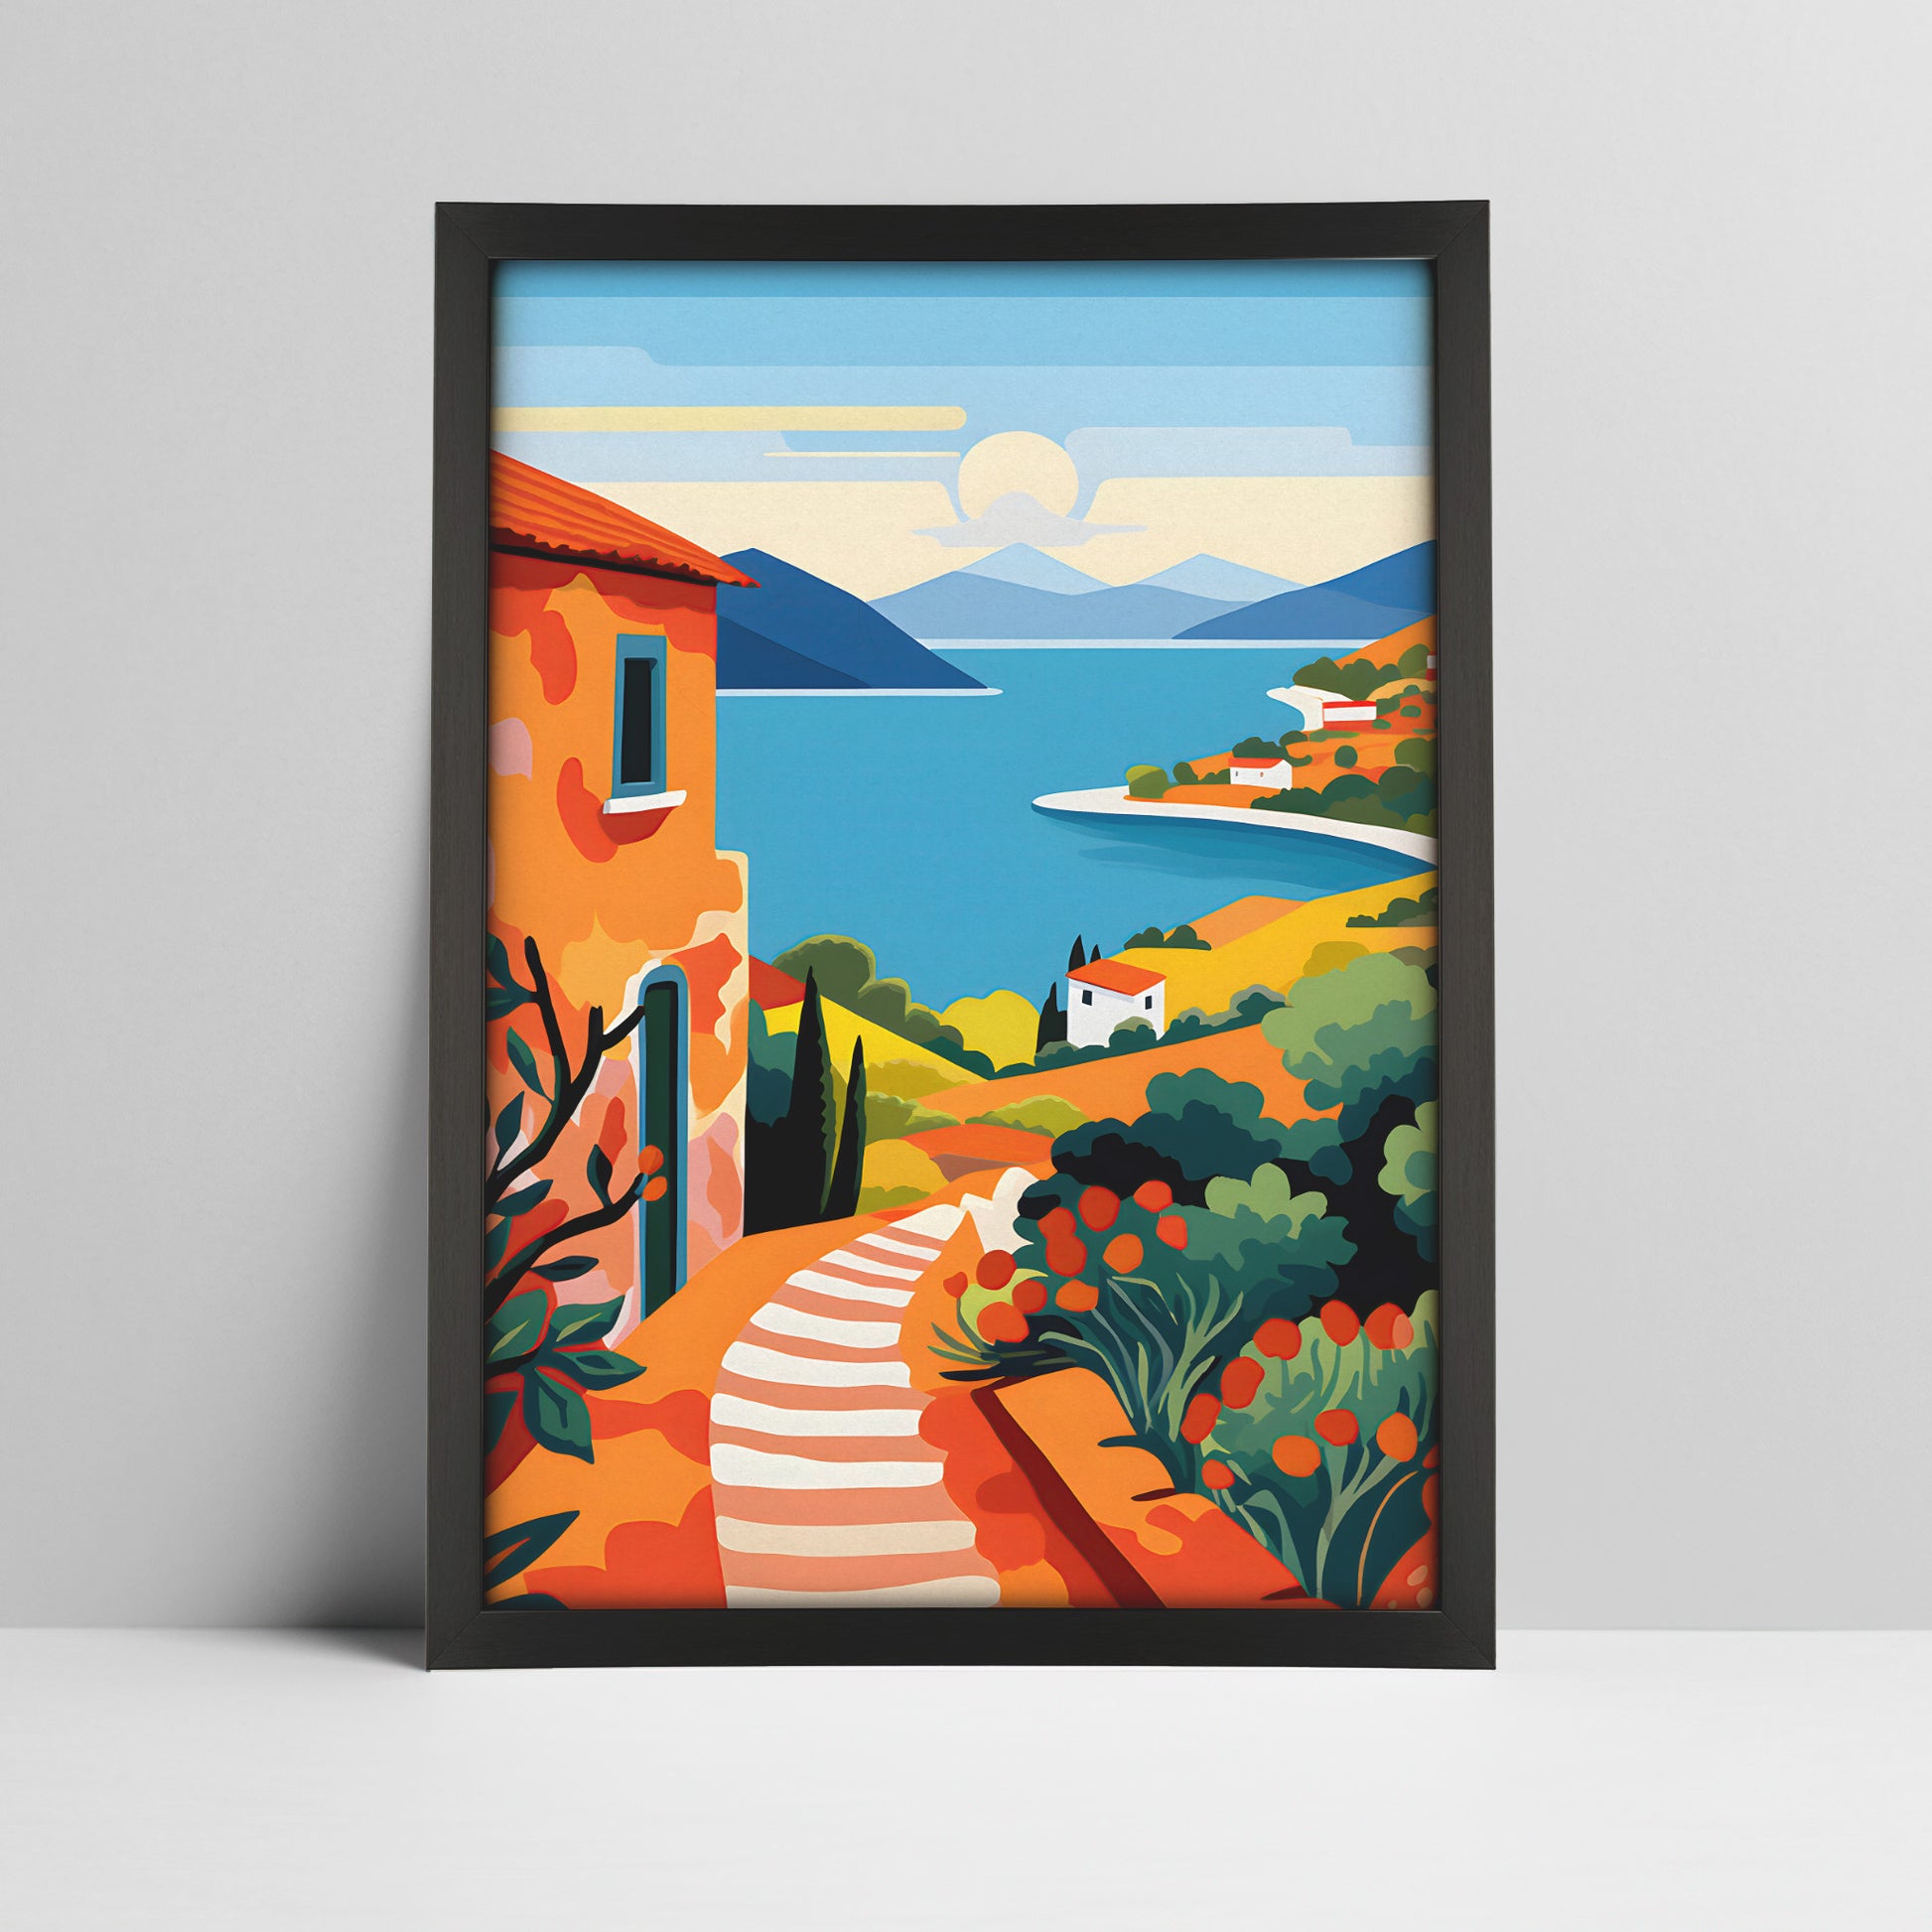 Art print of a mediterranean coastal village landscape illustration in a black frame